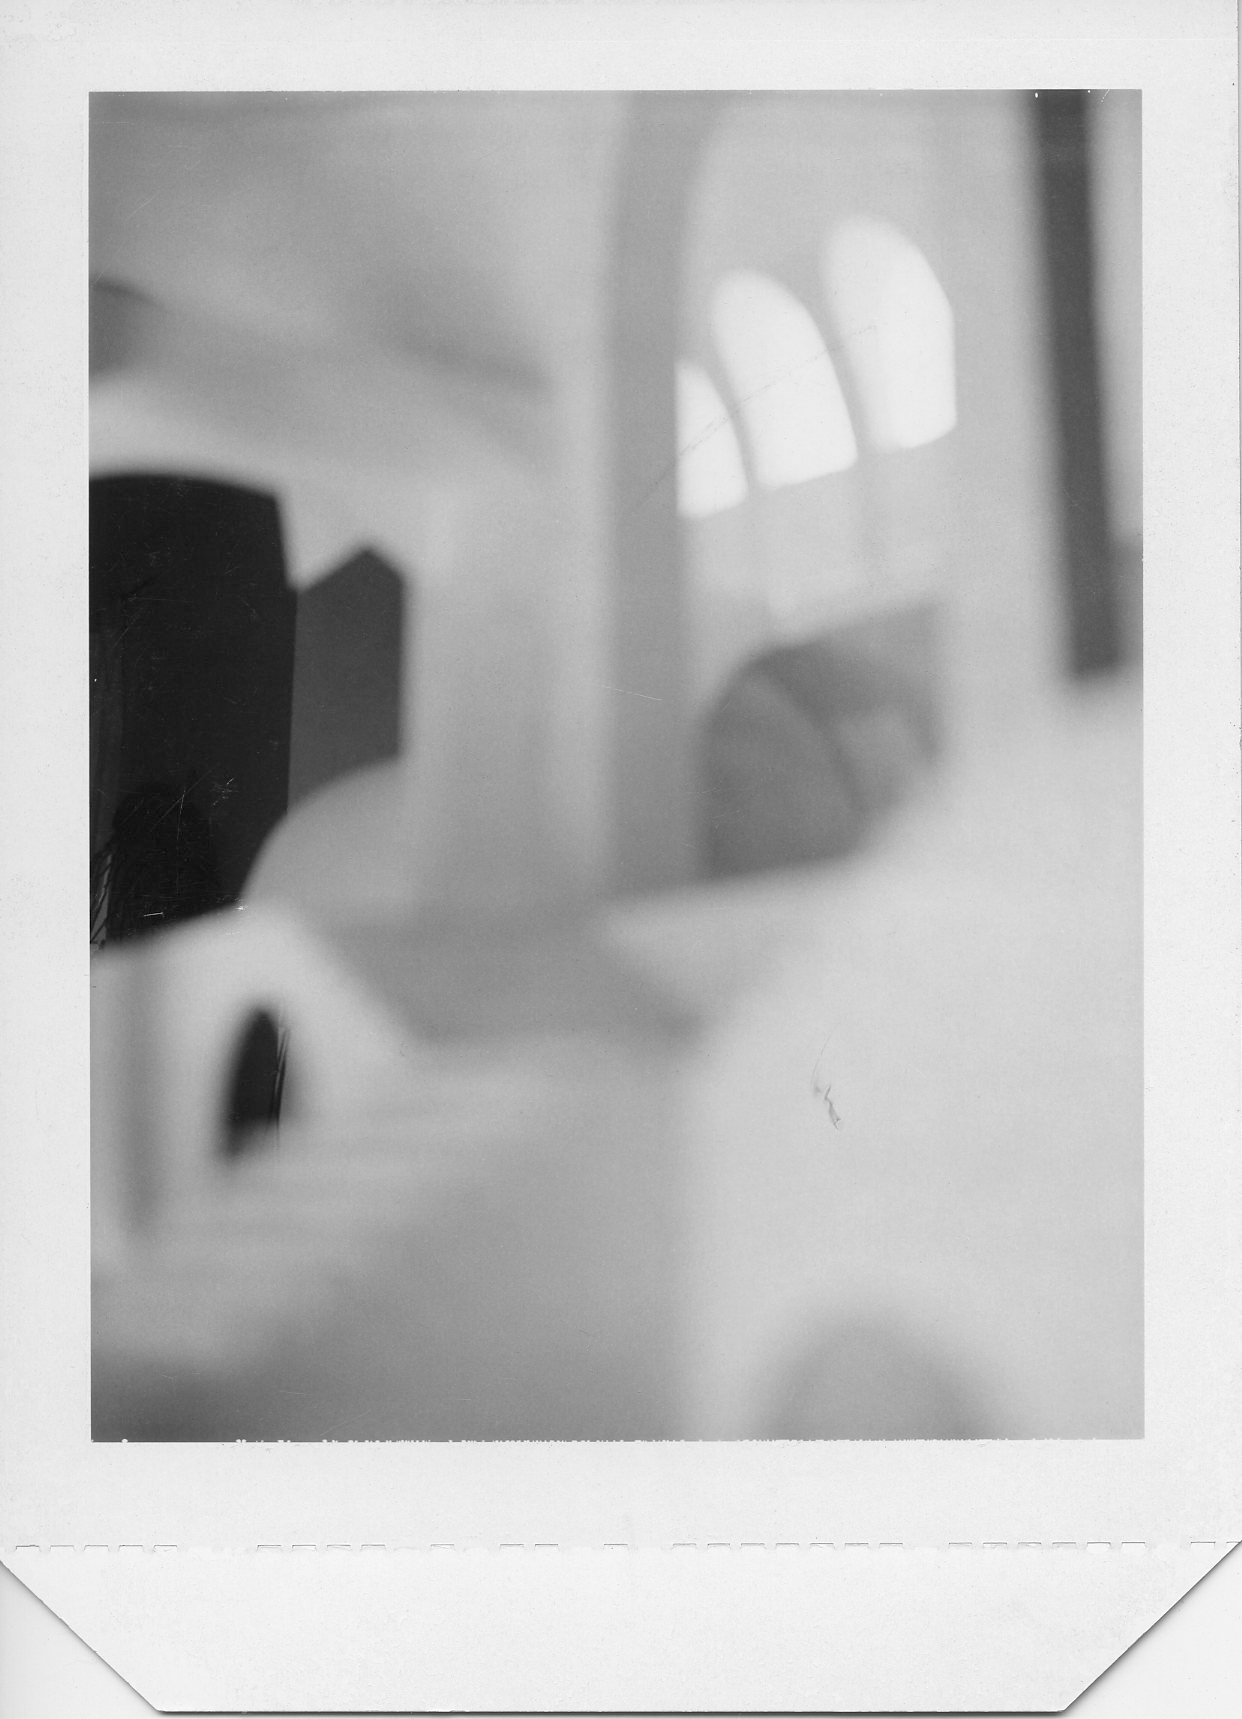   Piranesi Prison Polaroid Study #1,  1992 